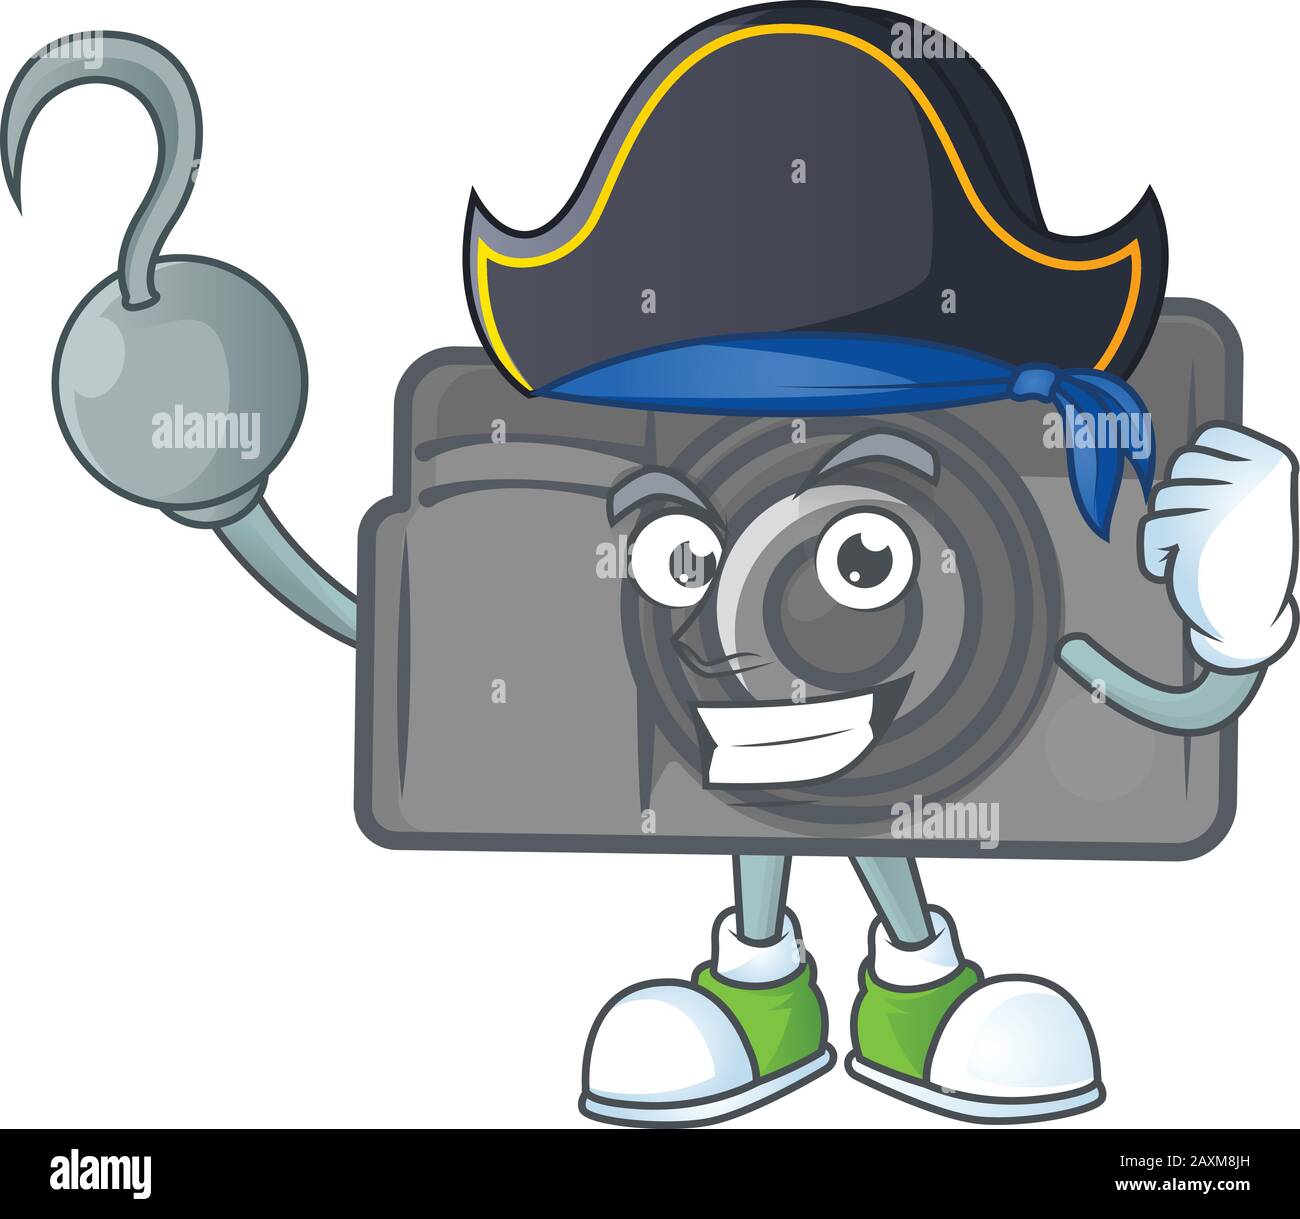 Ruhiges, einhändig verdecktes Maskottchen-Design der Piraten-Digitalkamera mit Hut Stock Vektor